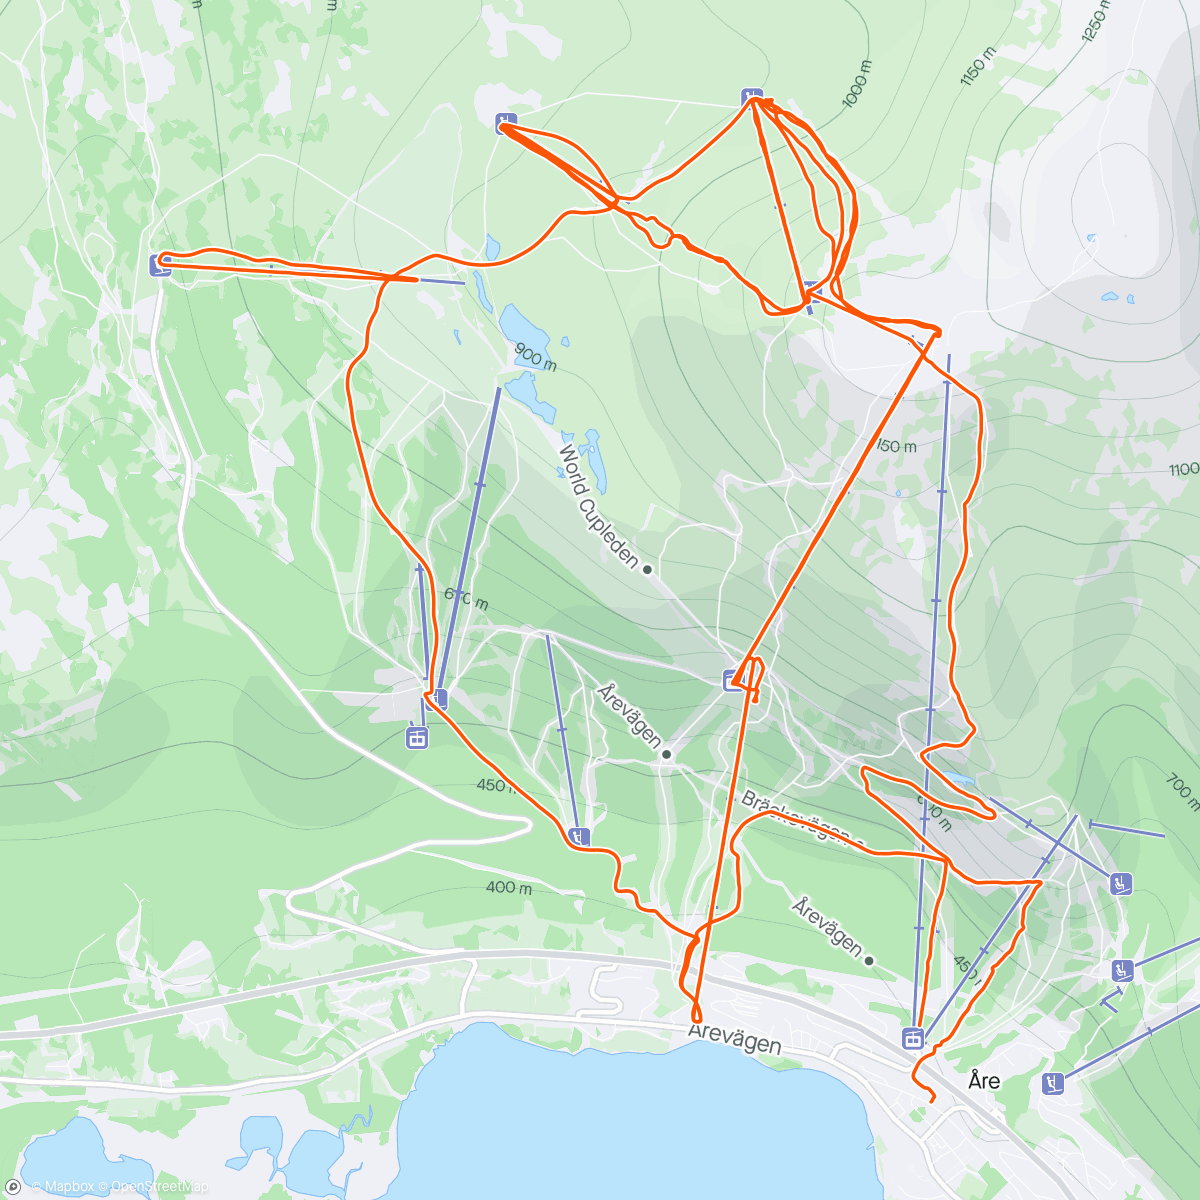 「🇸🇪⛷️ Åre」活動的地圖